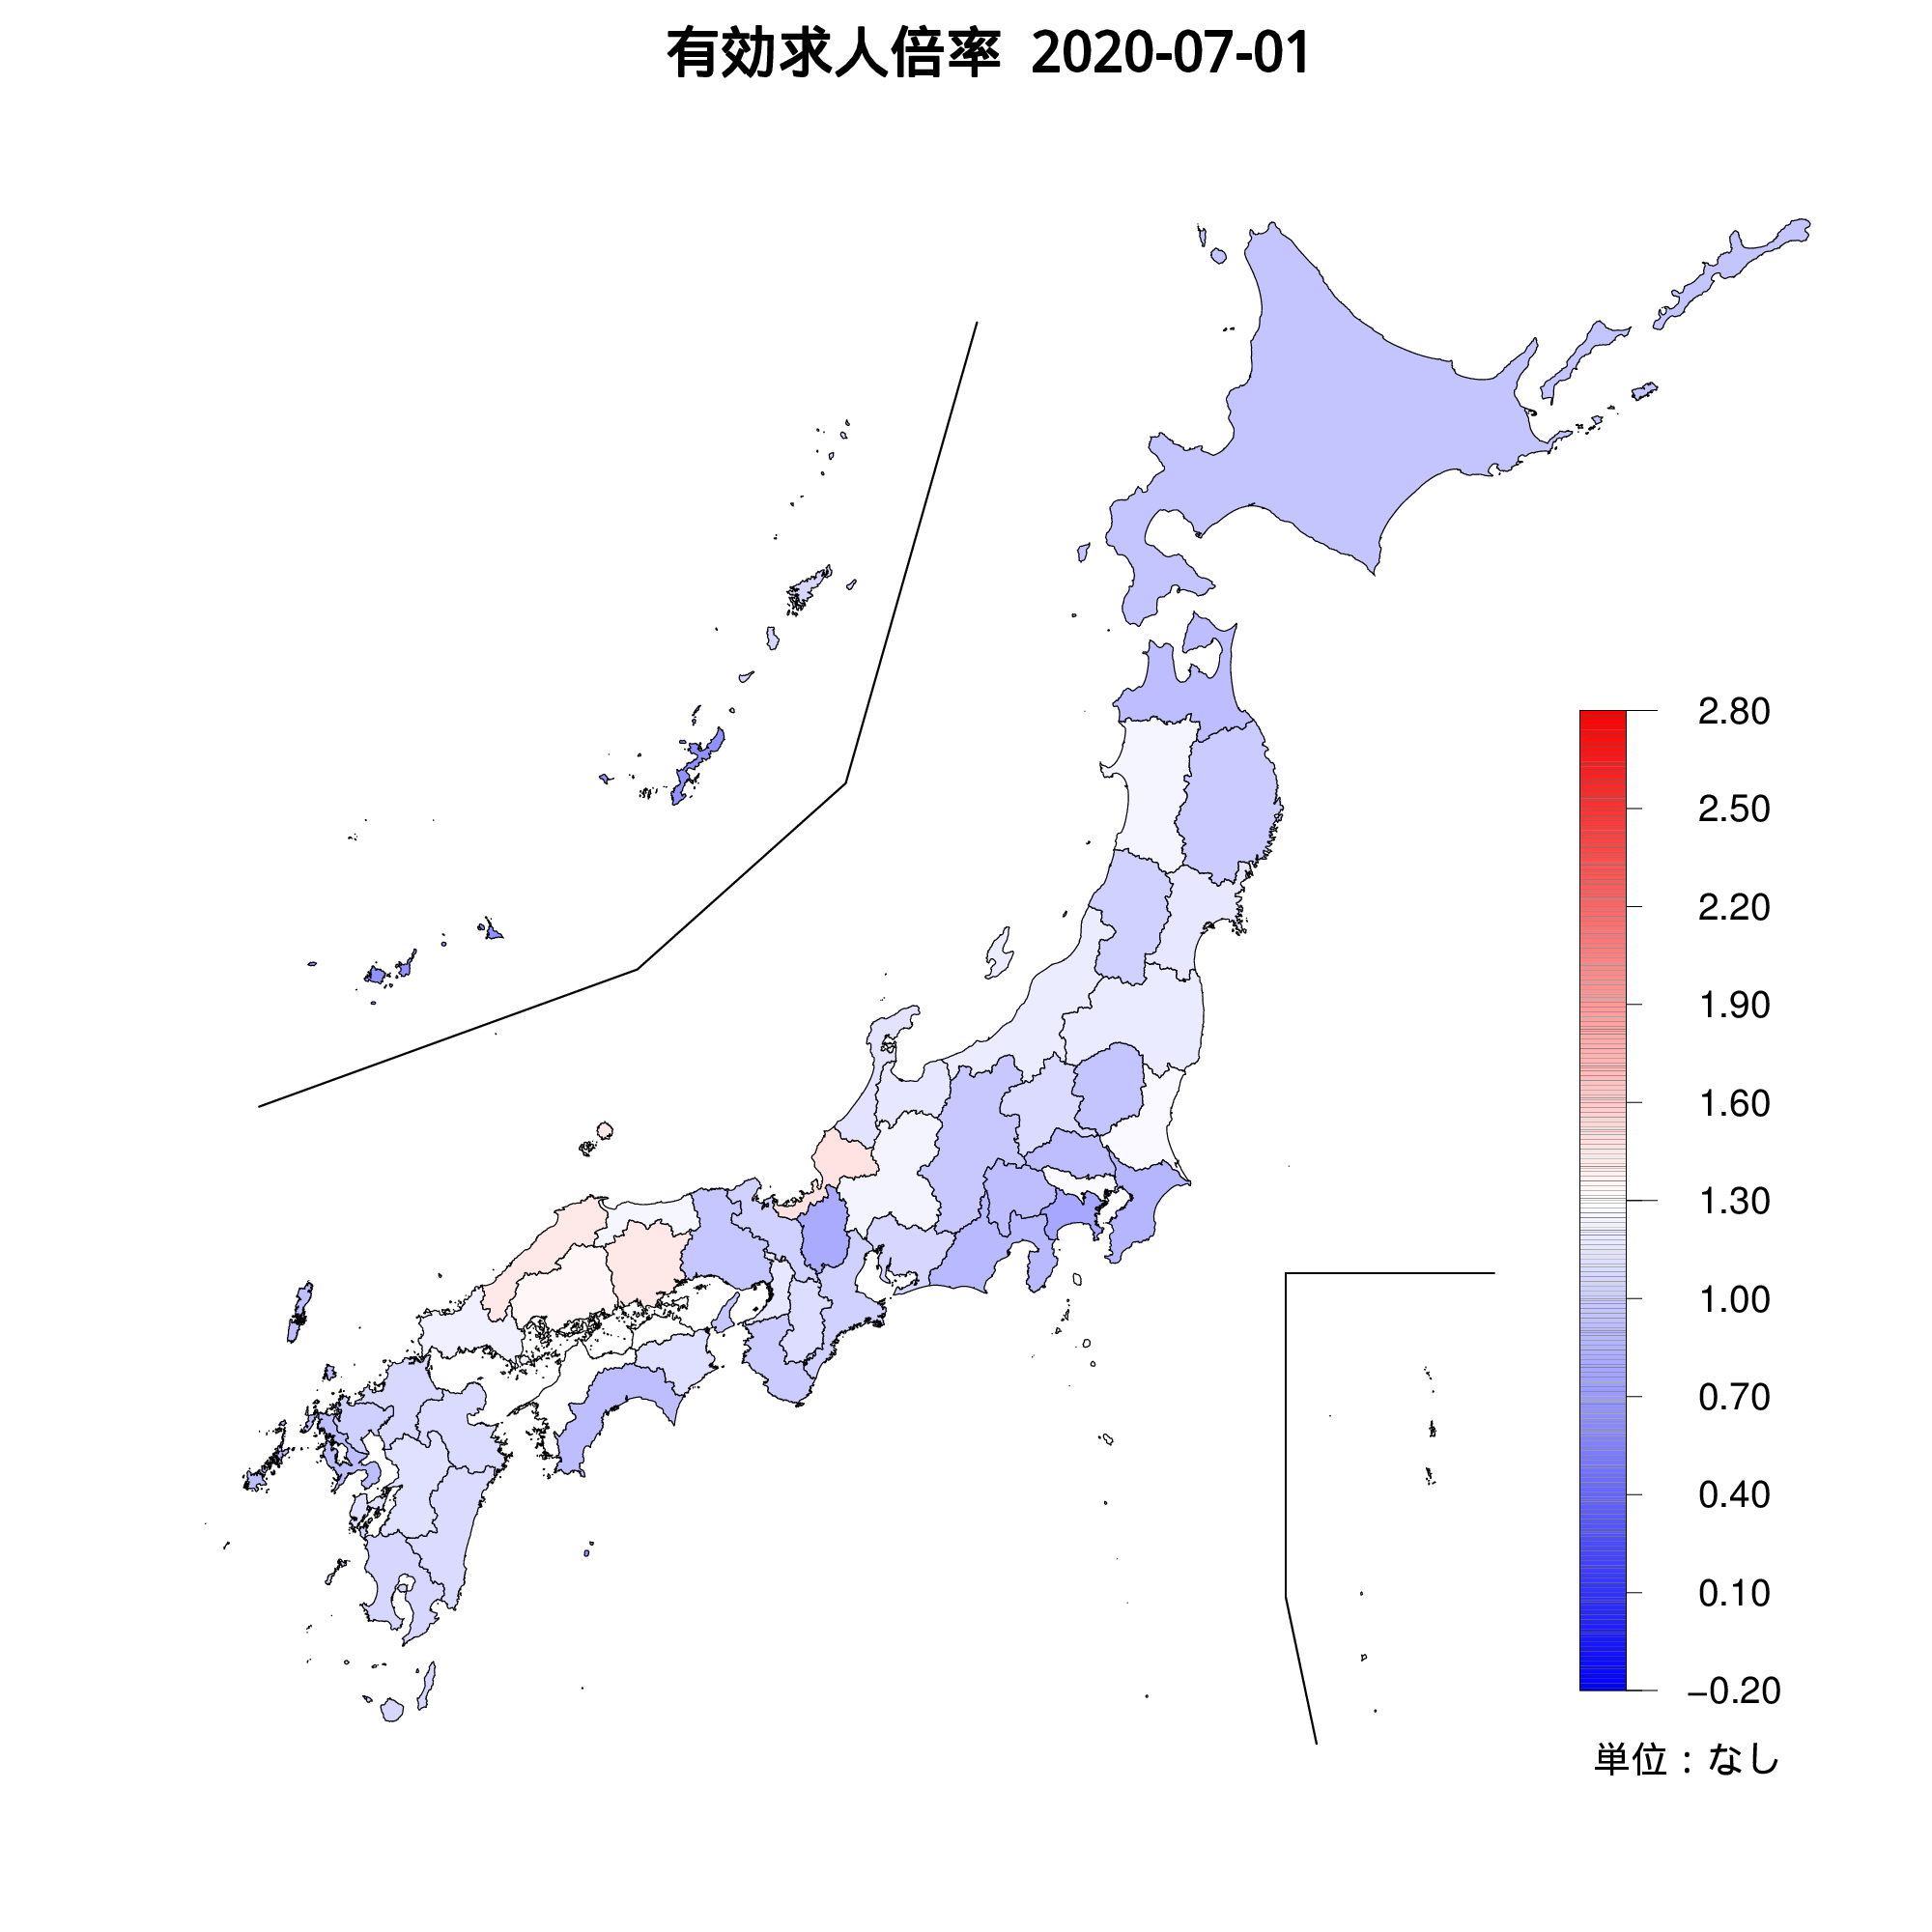 各都道府県の有効求人倍率を示す地図（2020年7月）